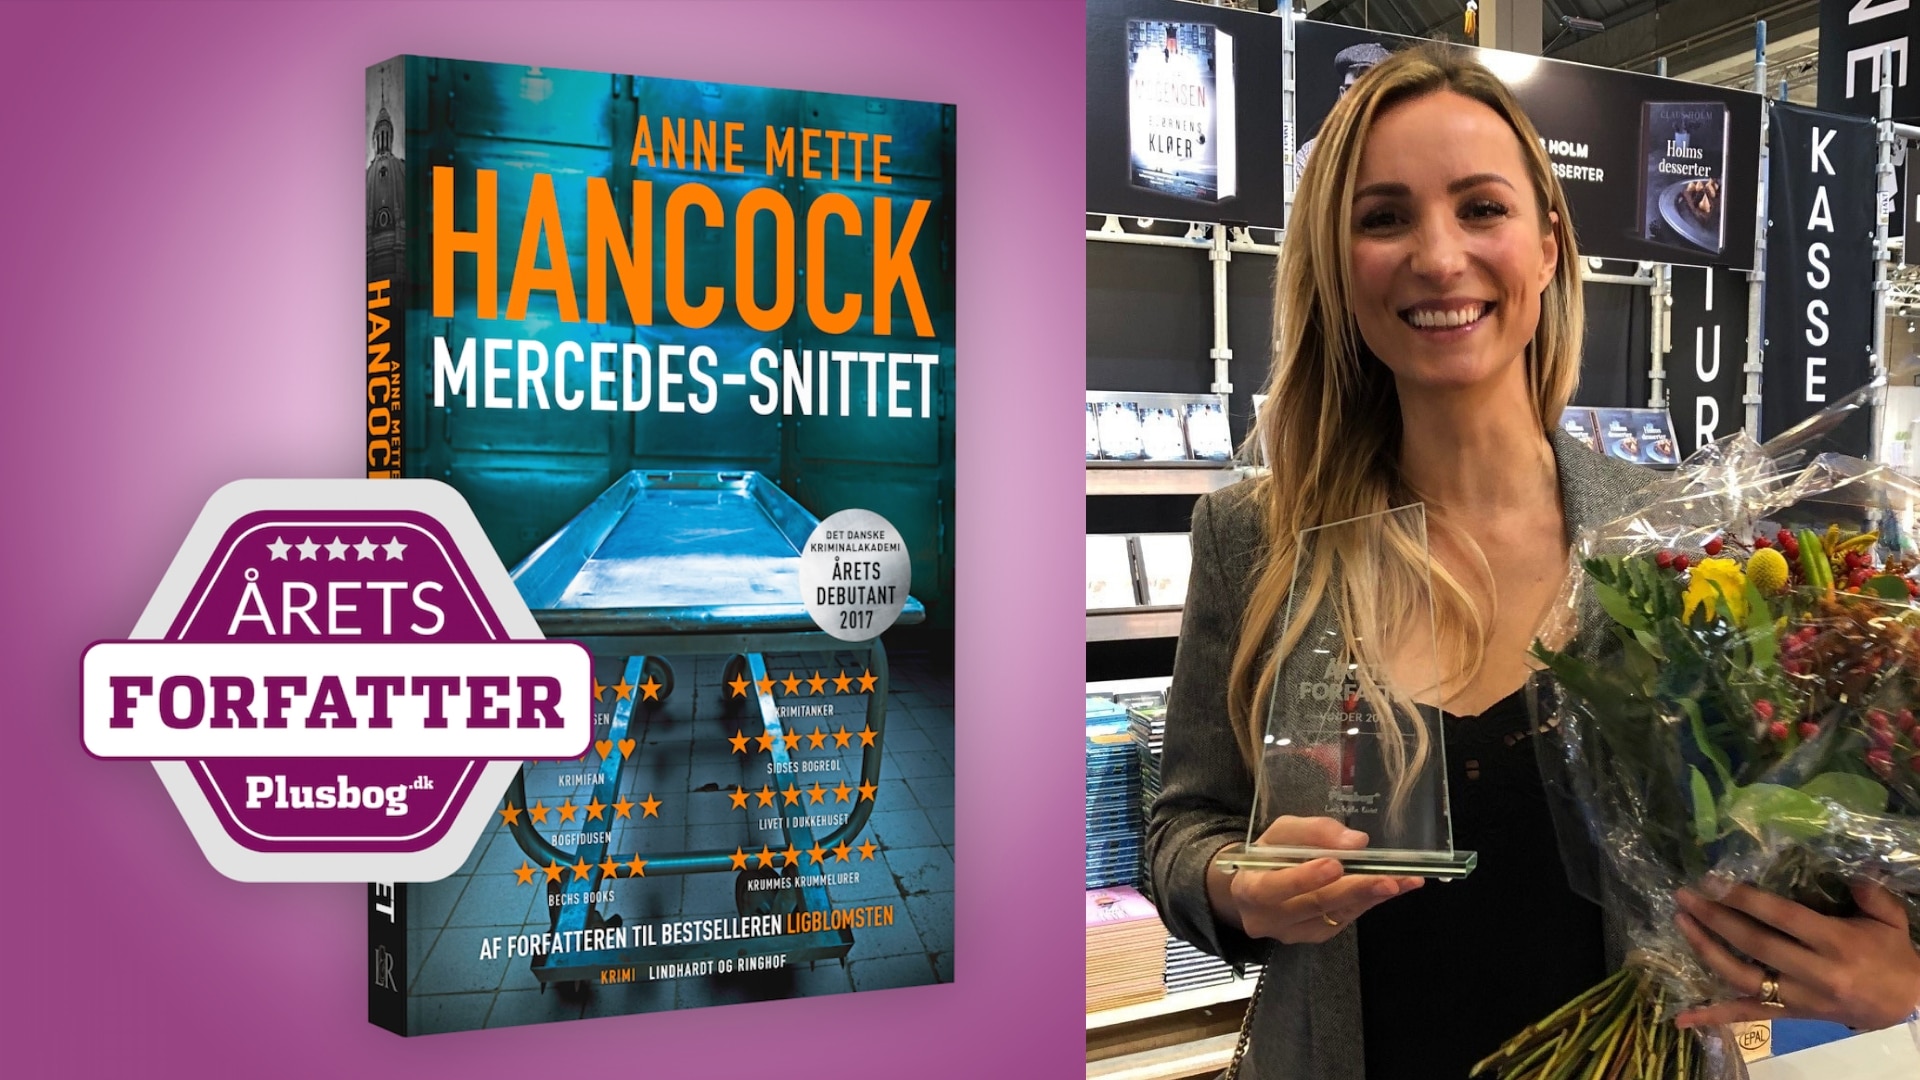 Anne Mette Hancock er Årets forfatter hos Plusbog